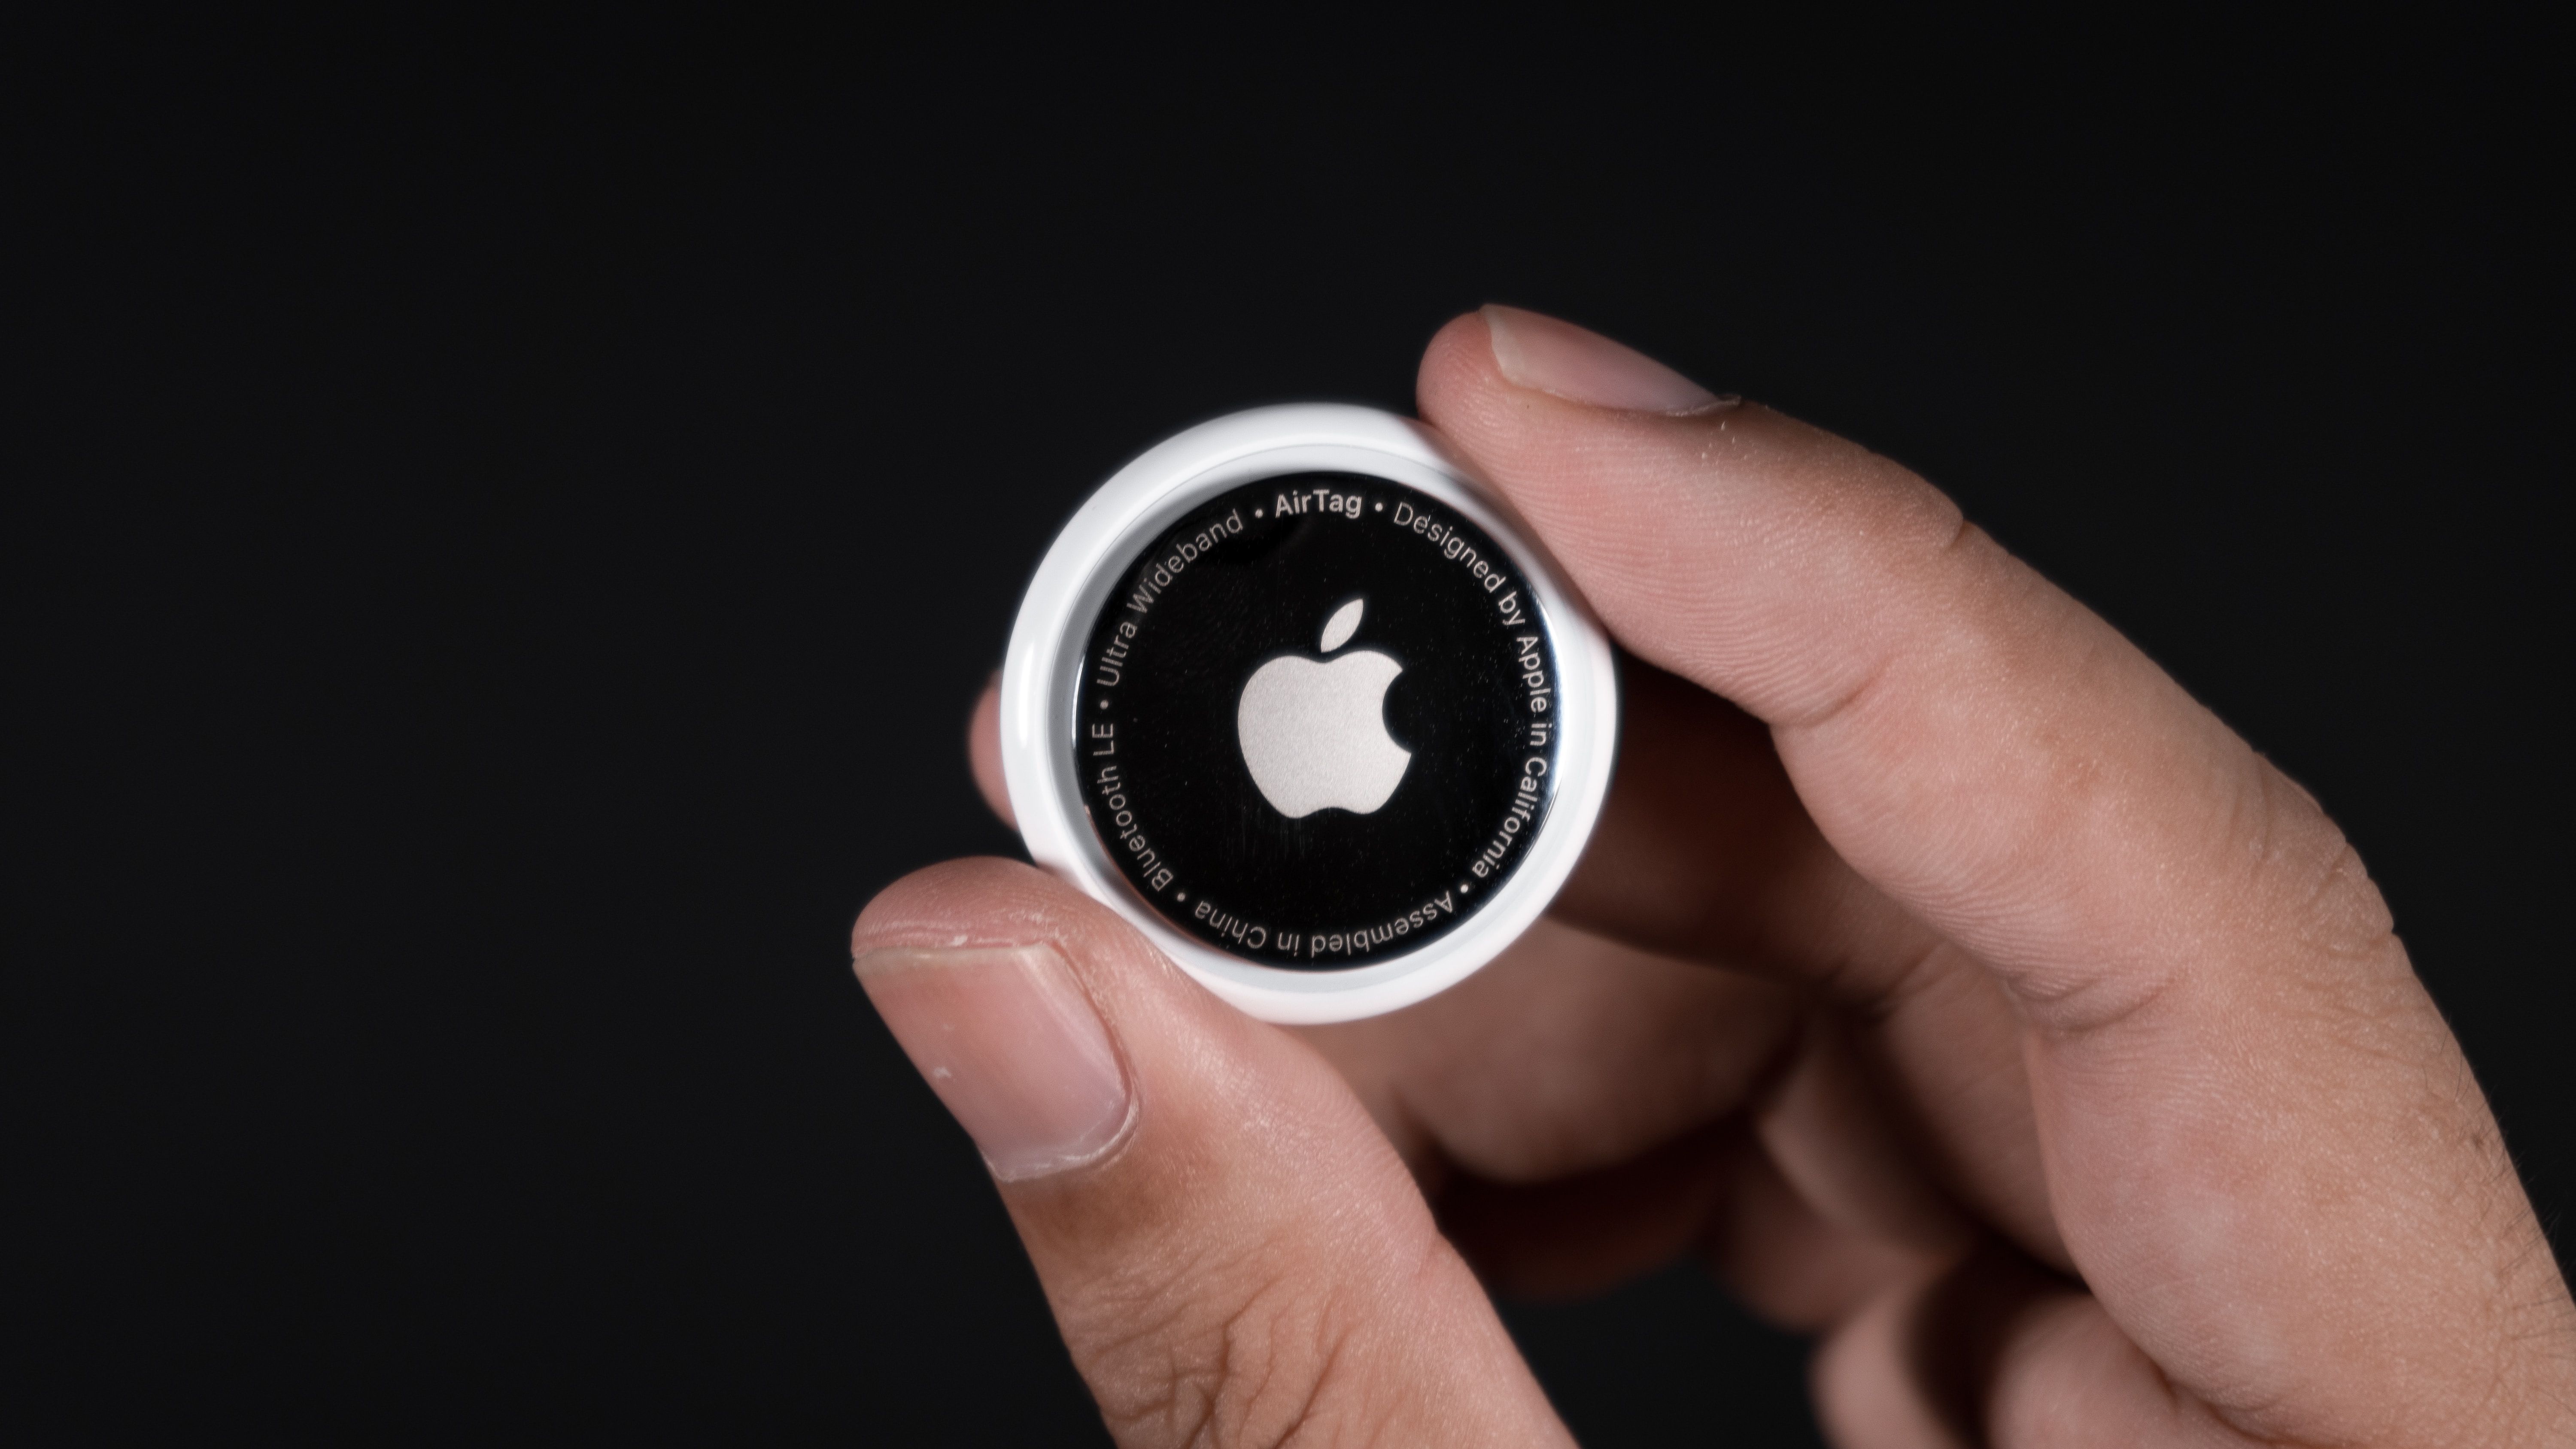 Foto aproximada de um Apple AirTag nas mãos contra um fundo preto